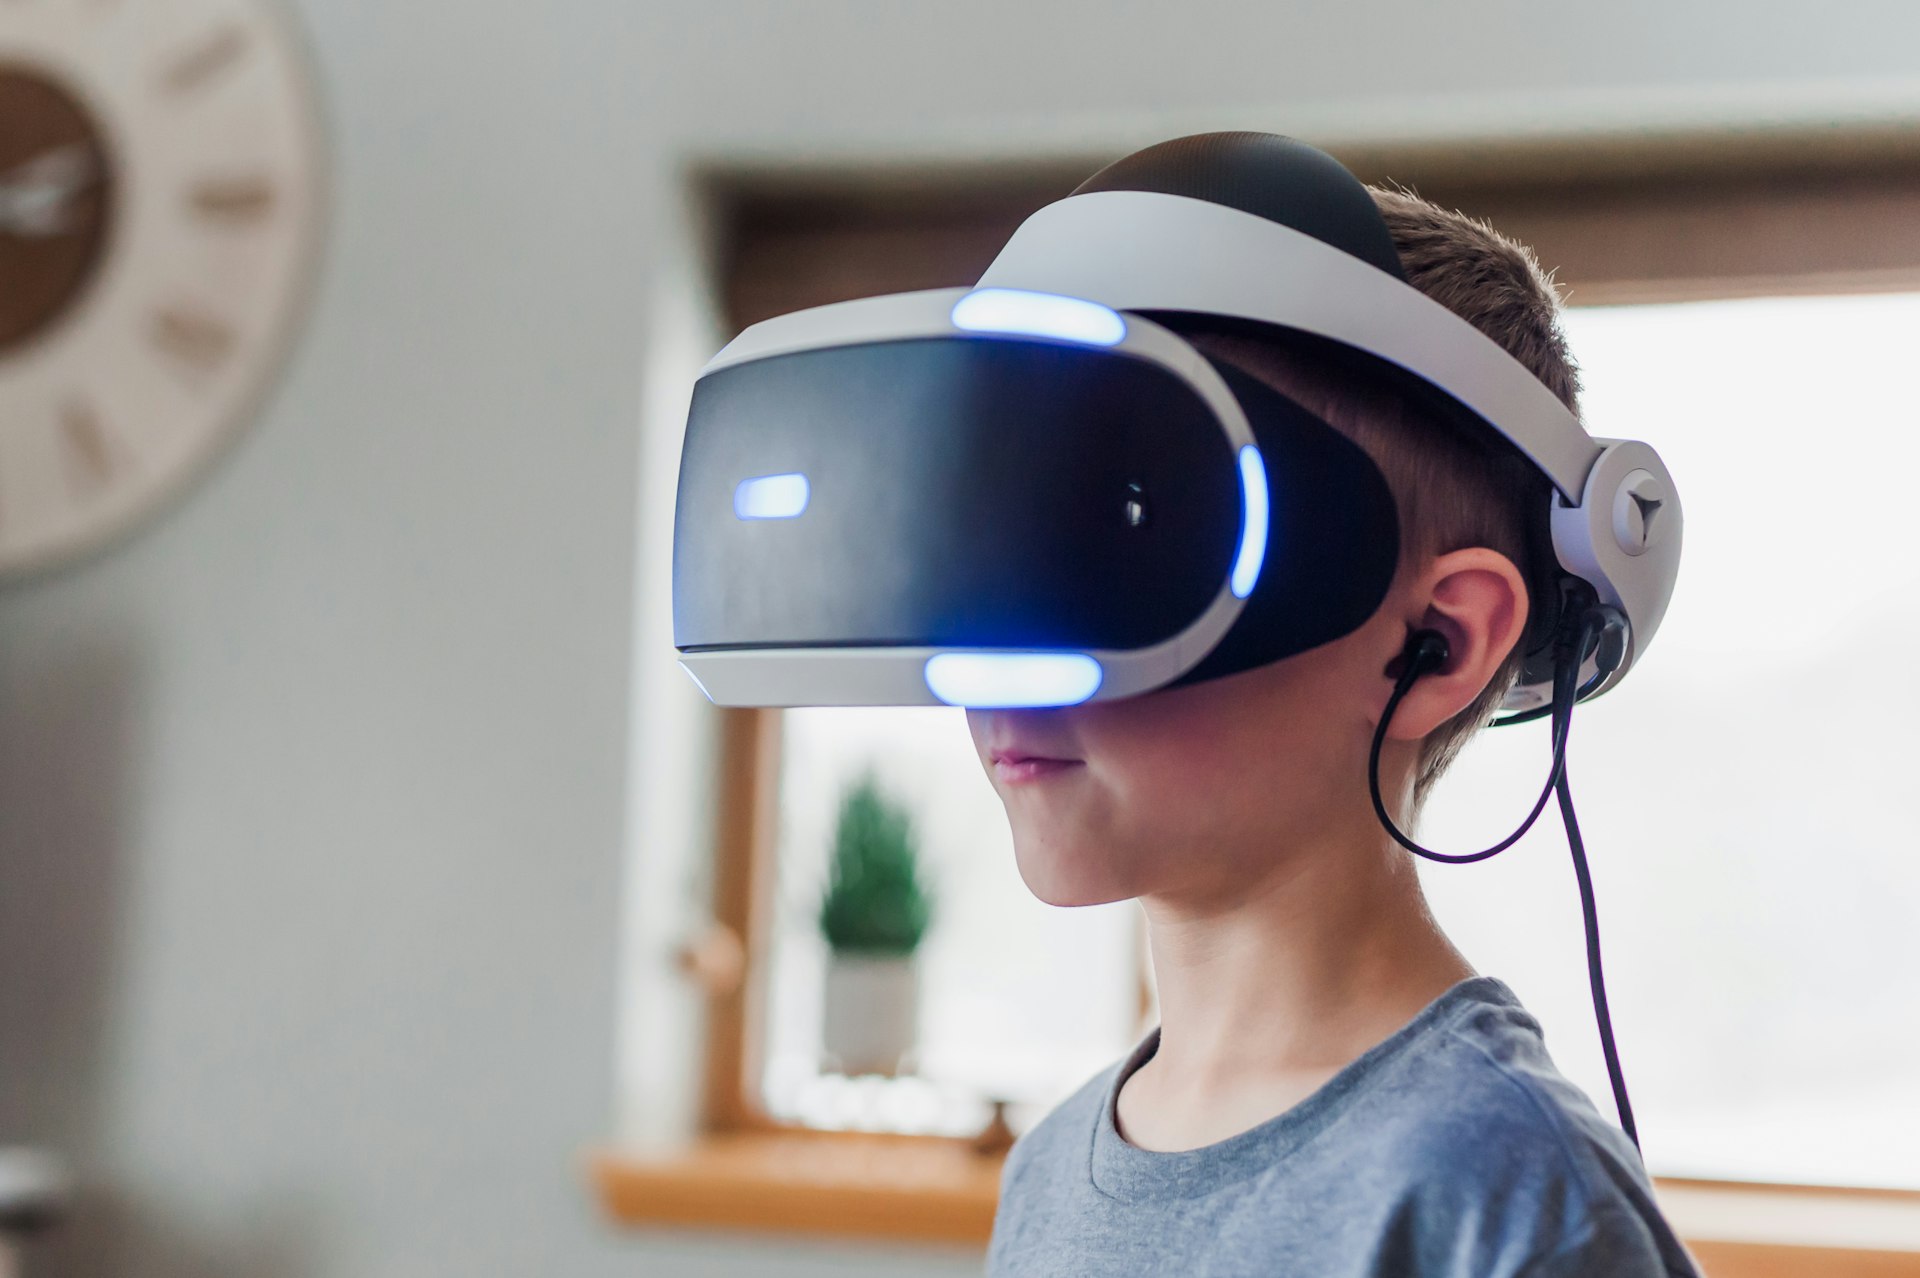 Motor control impairment: is virtual reality een behandeloptie bij nekpijn? 